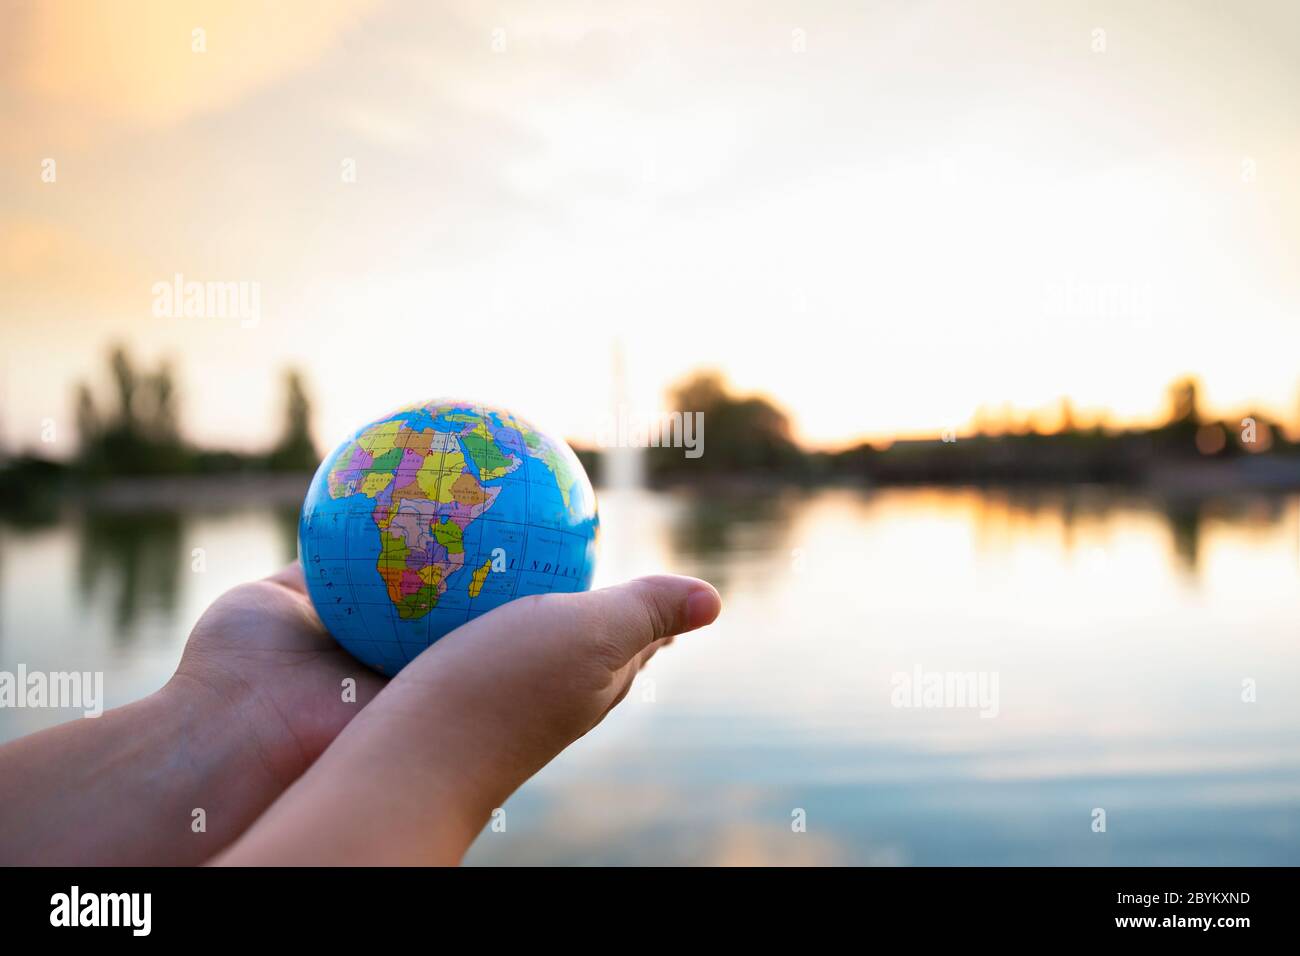 Détail des mains de la personne tenant une petite balle du monde devant un  lac au coucher du soleil. Mise au point sélective. Concept de voyage et de  soin de la planète